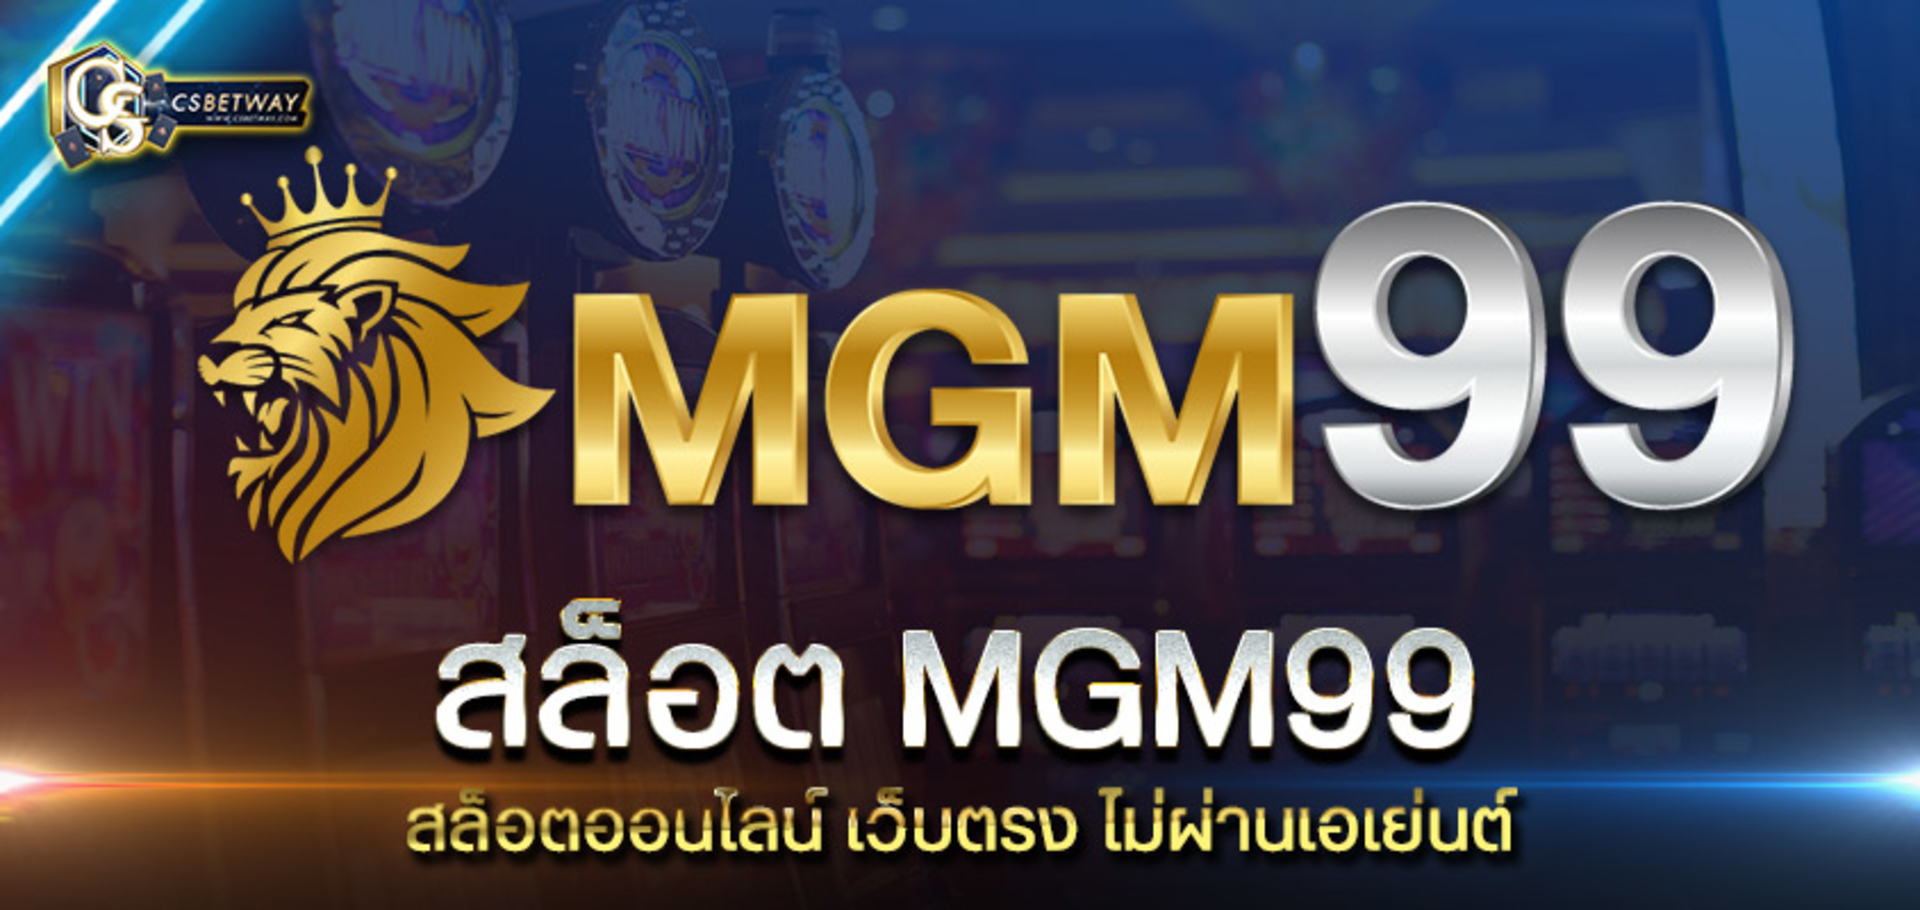 สล็อต mgm99 สล็อตออนไลน์ เว็บตรง ไม่ผ่านเอเย่นต์ สล็อตแตกง่าย จ่ายเร็วที่สุดในประเทศไทย